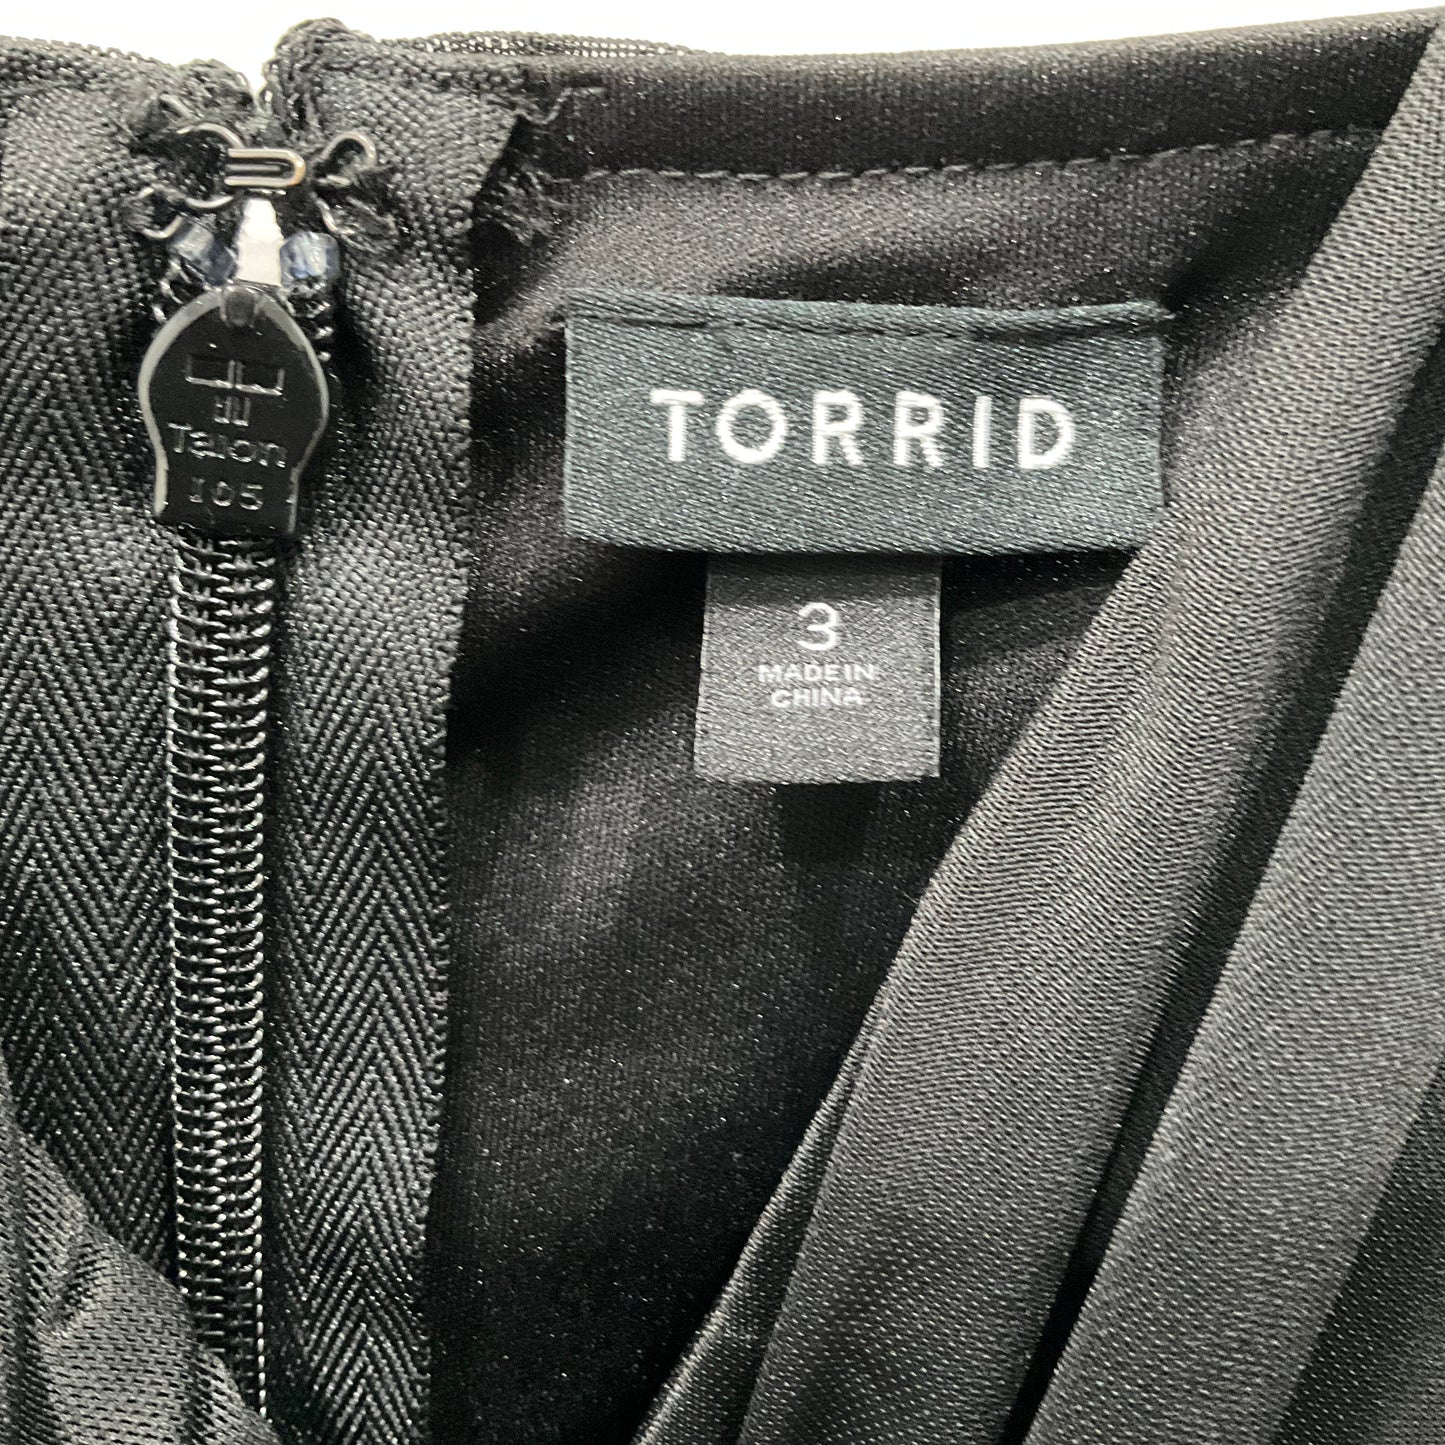 Black Dress Casual Maxi Torrid, Size 3x